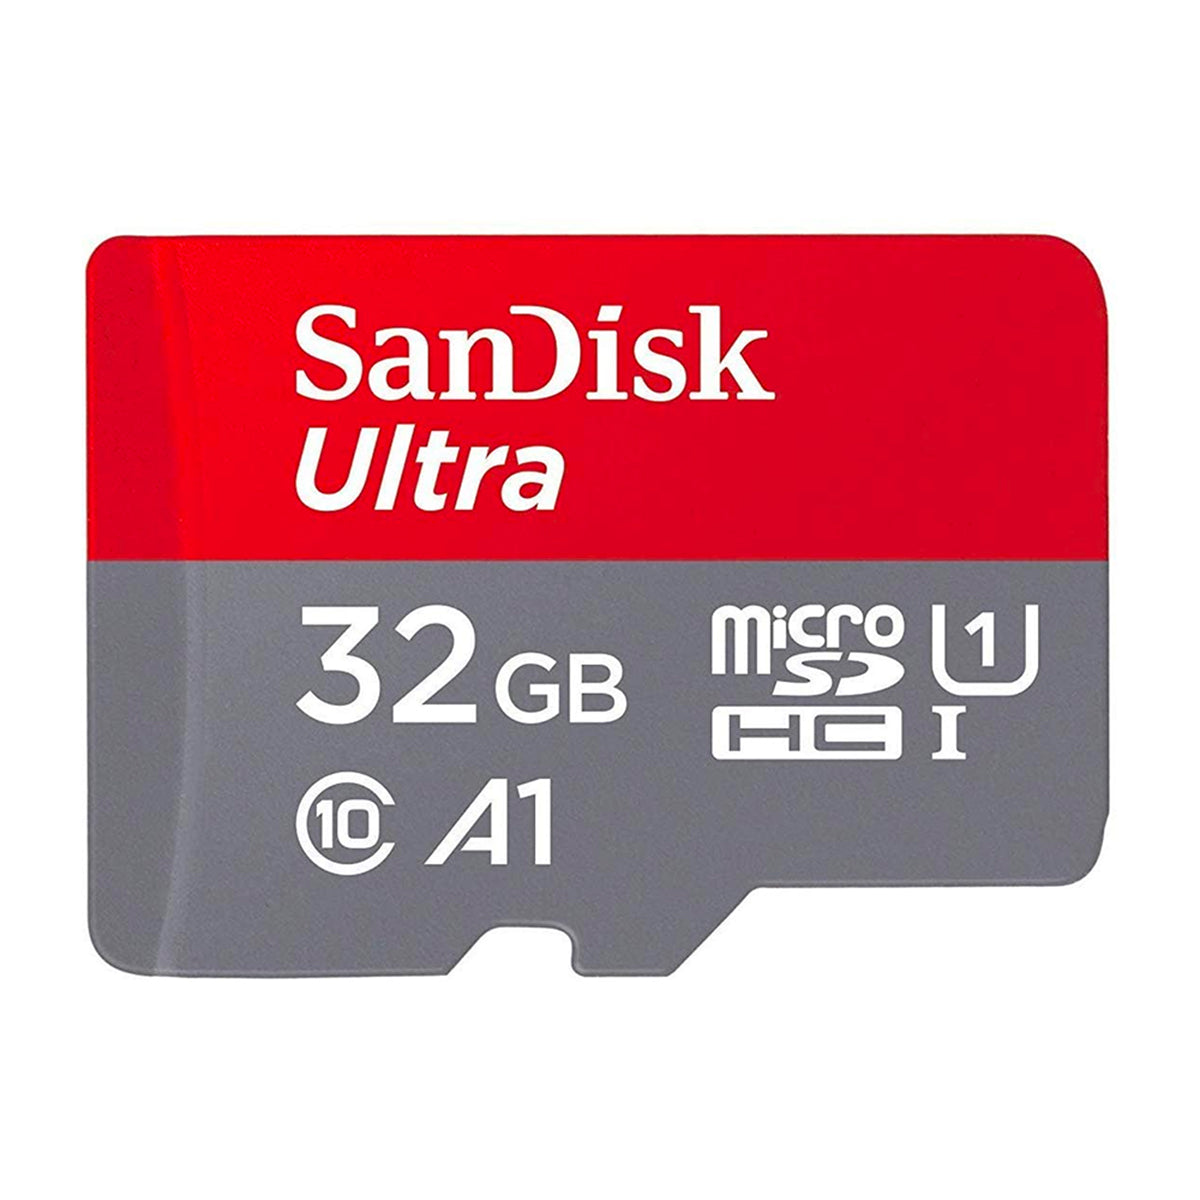 HIDIZS-SanDisk32GBUltramicroSDHCUHS-I-230302